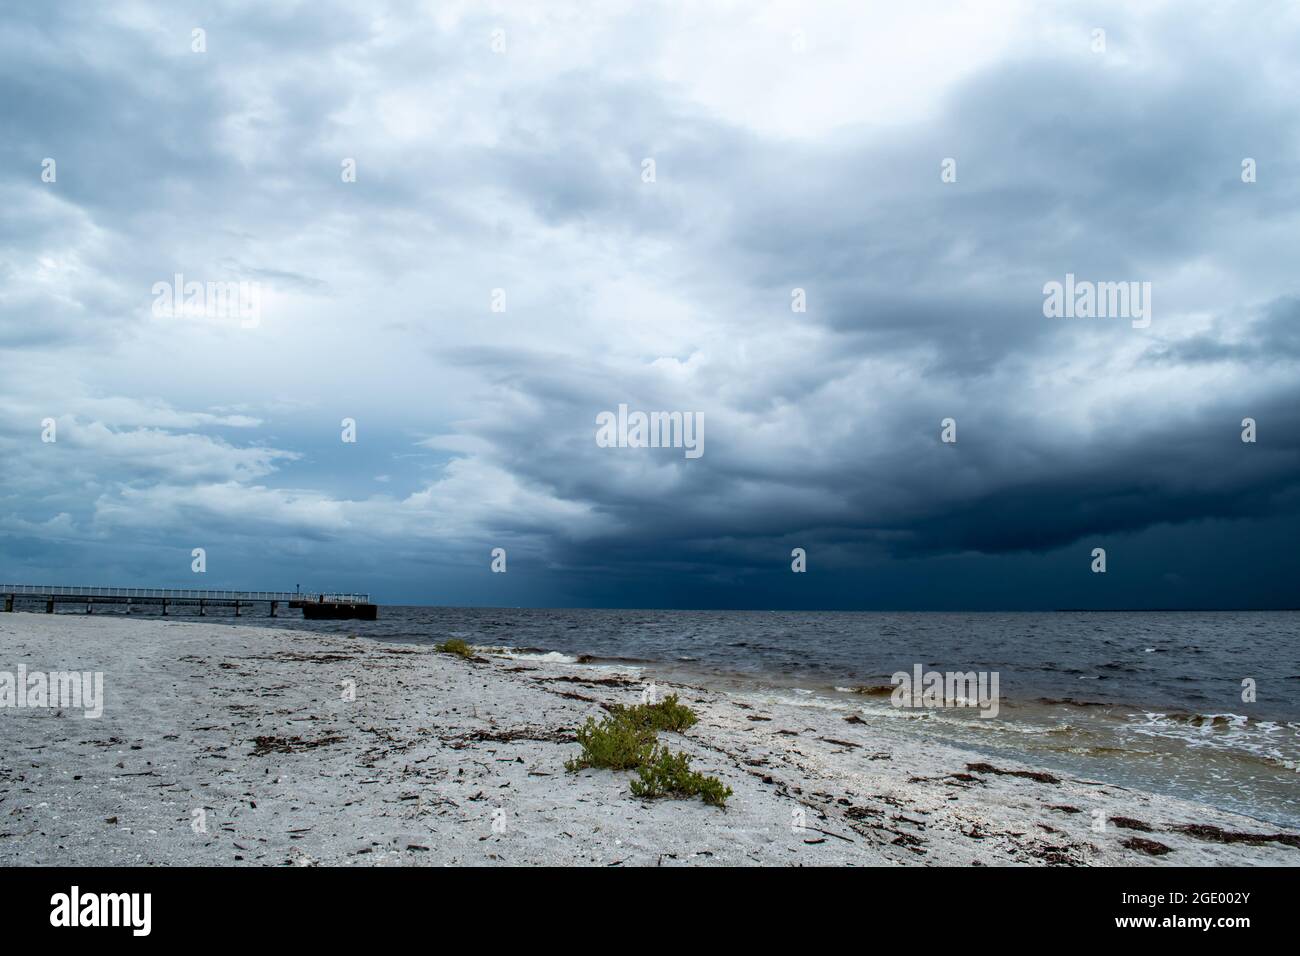 Port Boca Grande Faro e Museo sull'isola di Gasparilla come una tempesta tropicale con nuvole nere incombe al largo della costa nel Golfo del Messico Foto Stock